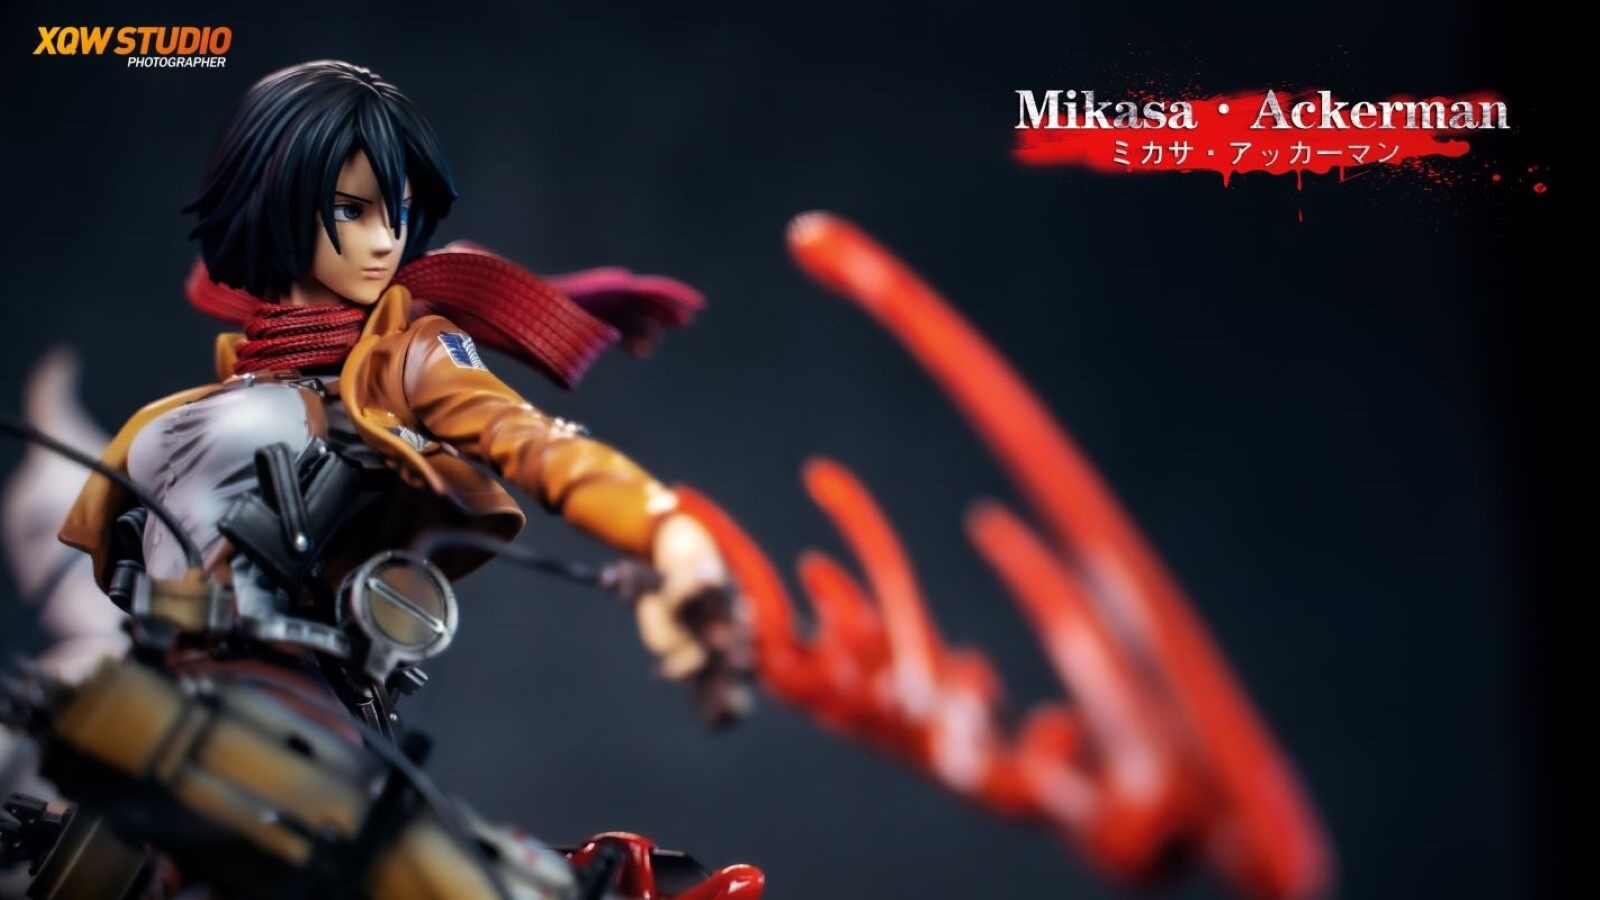 New Mikasa Figure by LC Studio #attackontitan #shingekinokyojin #aot #snk # shingeki #kyojin #titan #進撃の巨人 #anime #manga #mikasa…